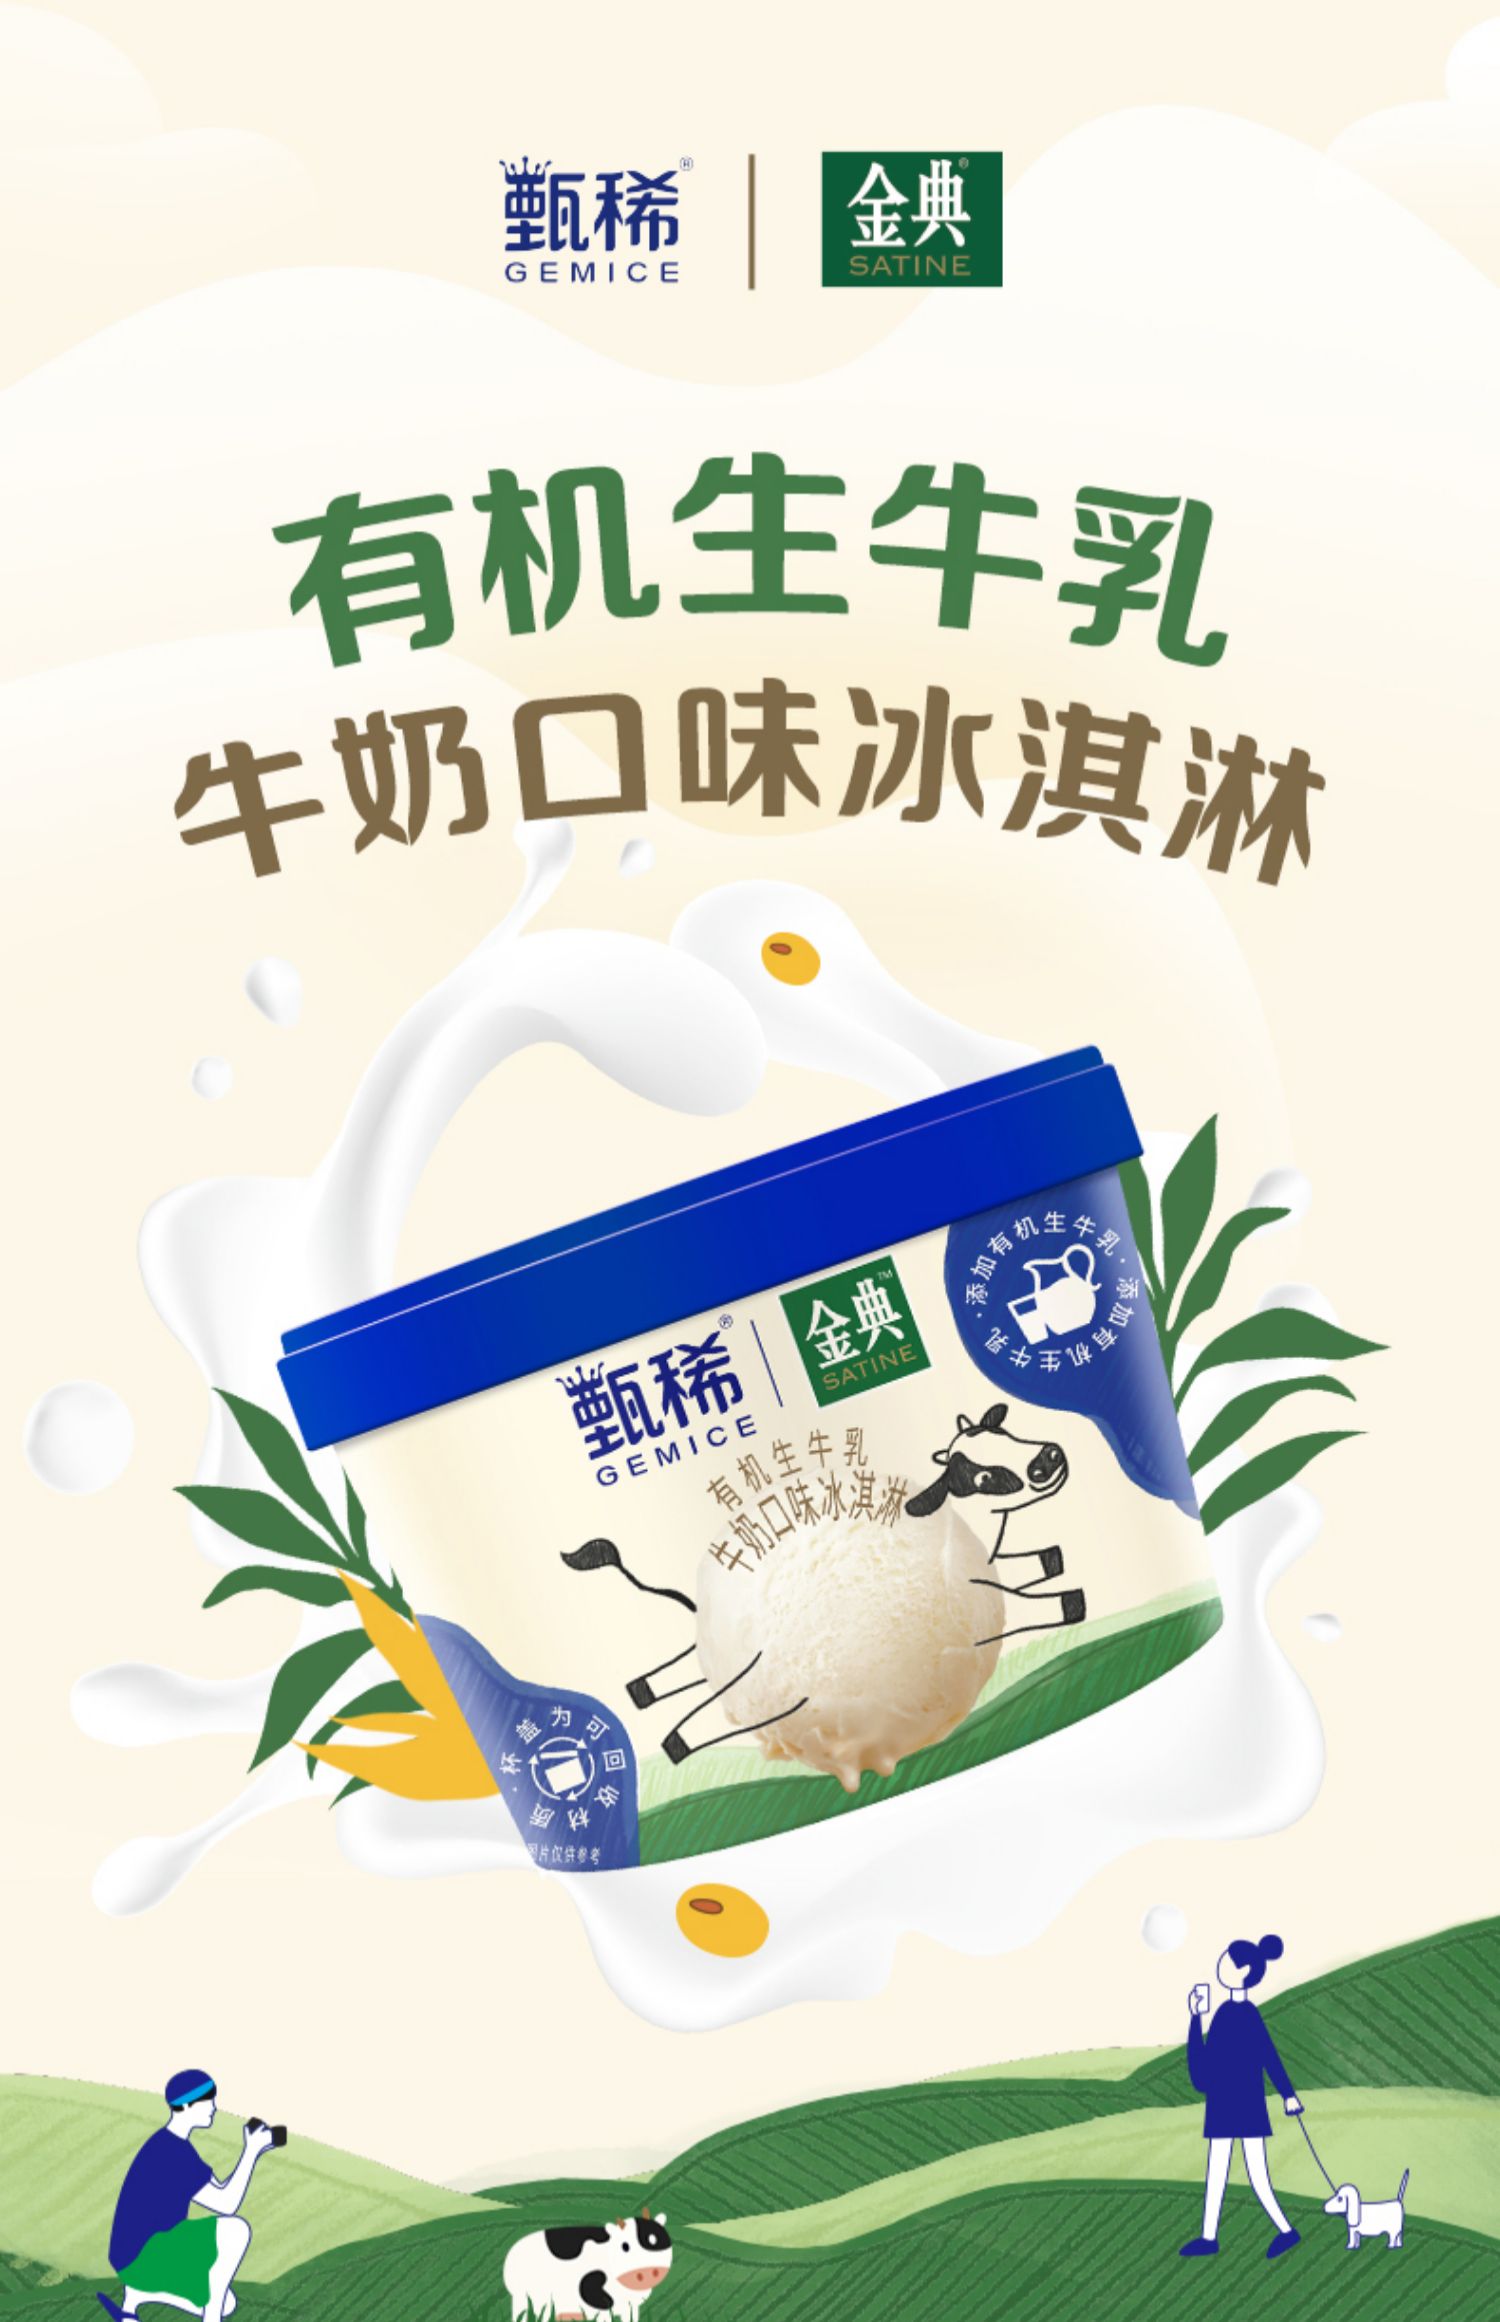 【自选20杯】伊利甄稀生牛乳冰淇淋90g